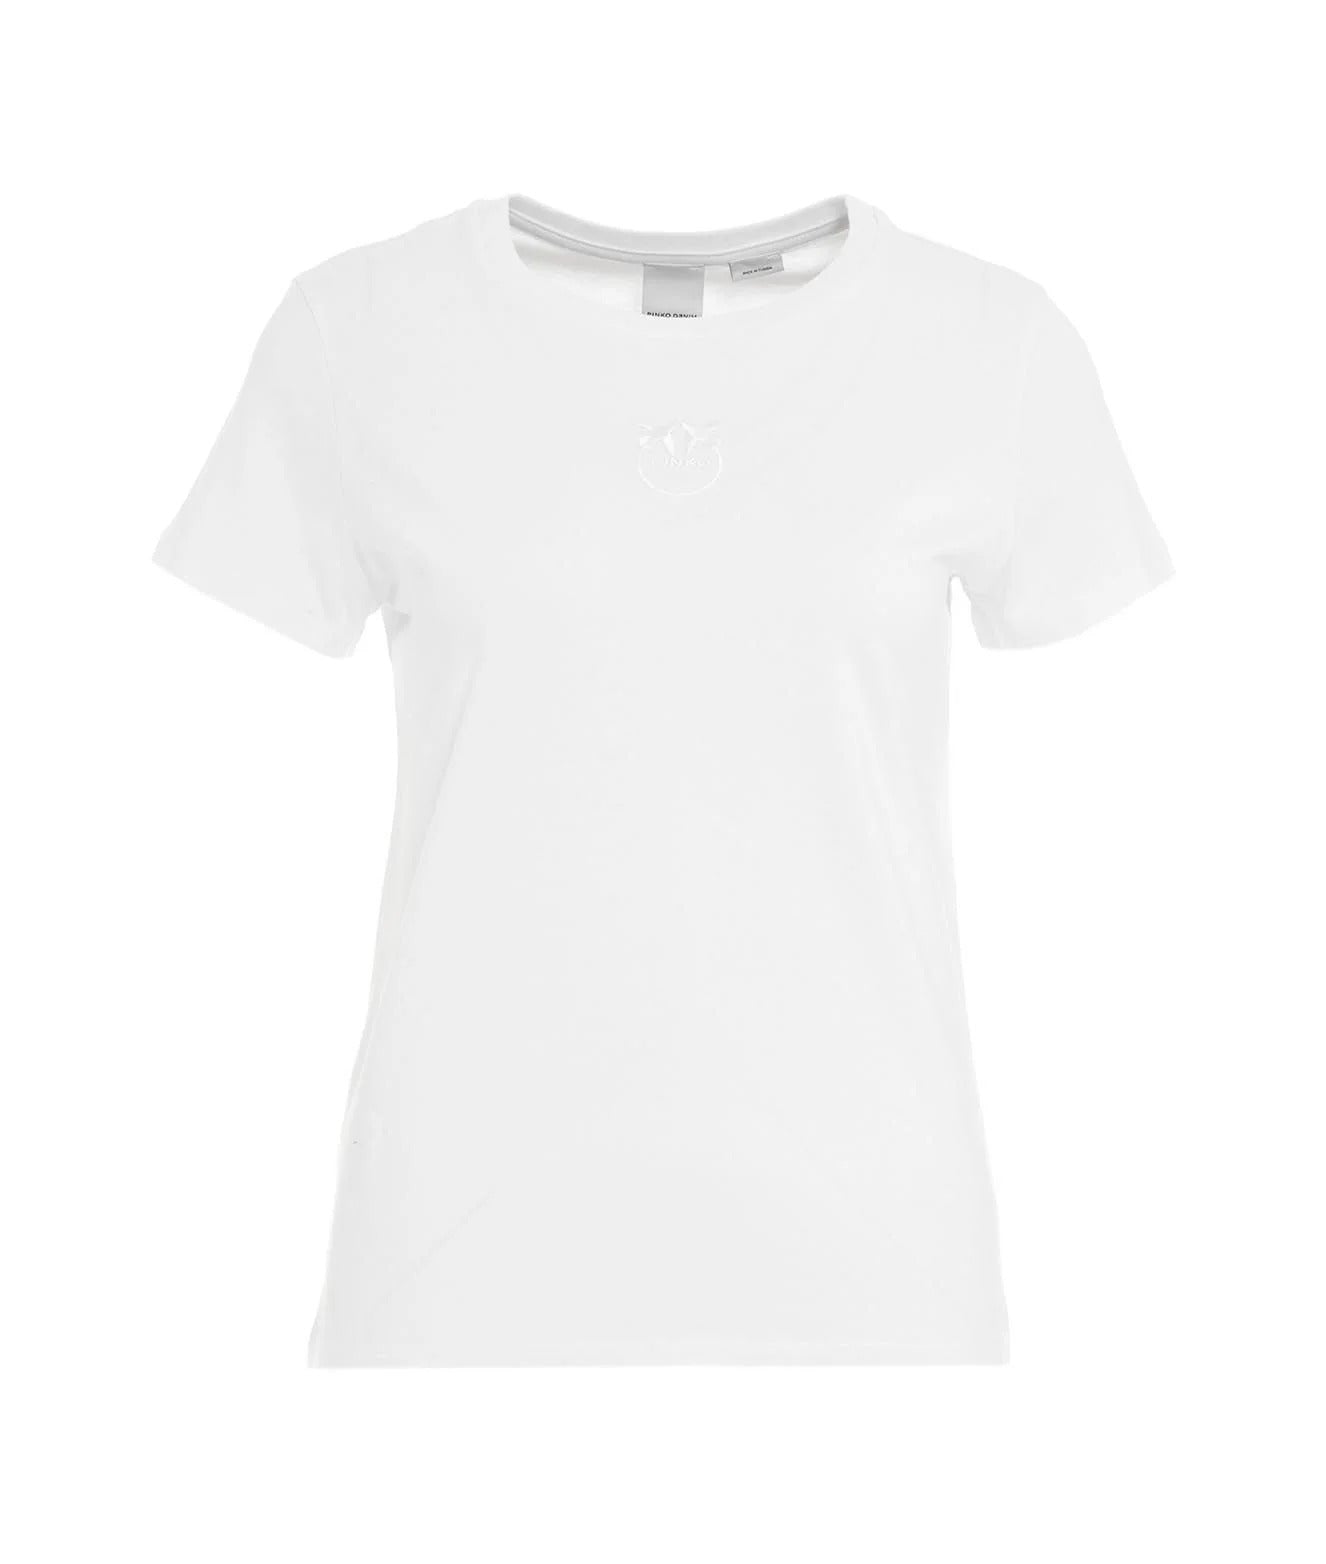 PINKO White Mini Logo Basic T-shirt